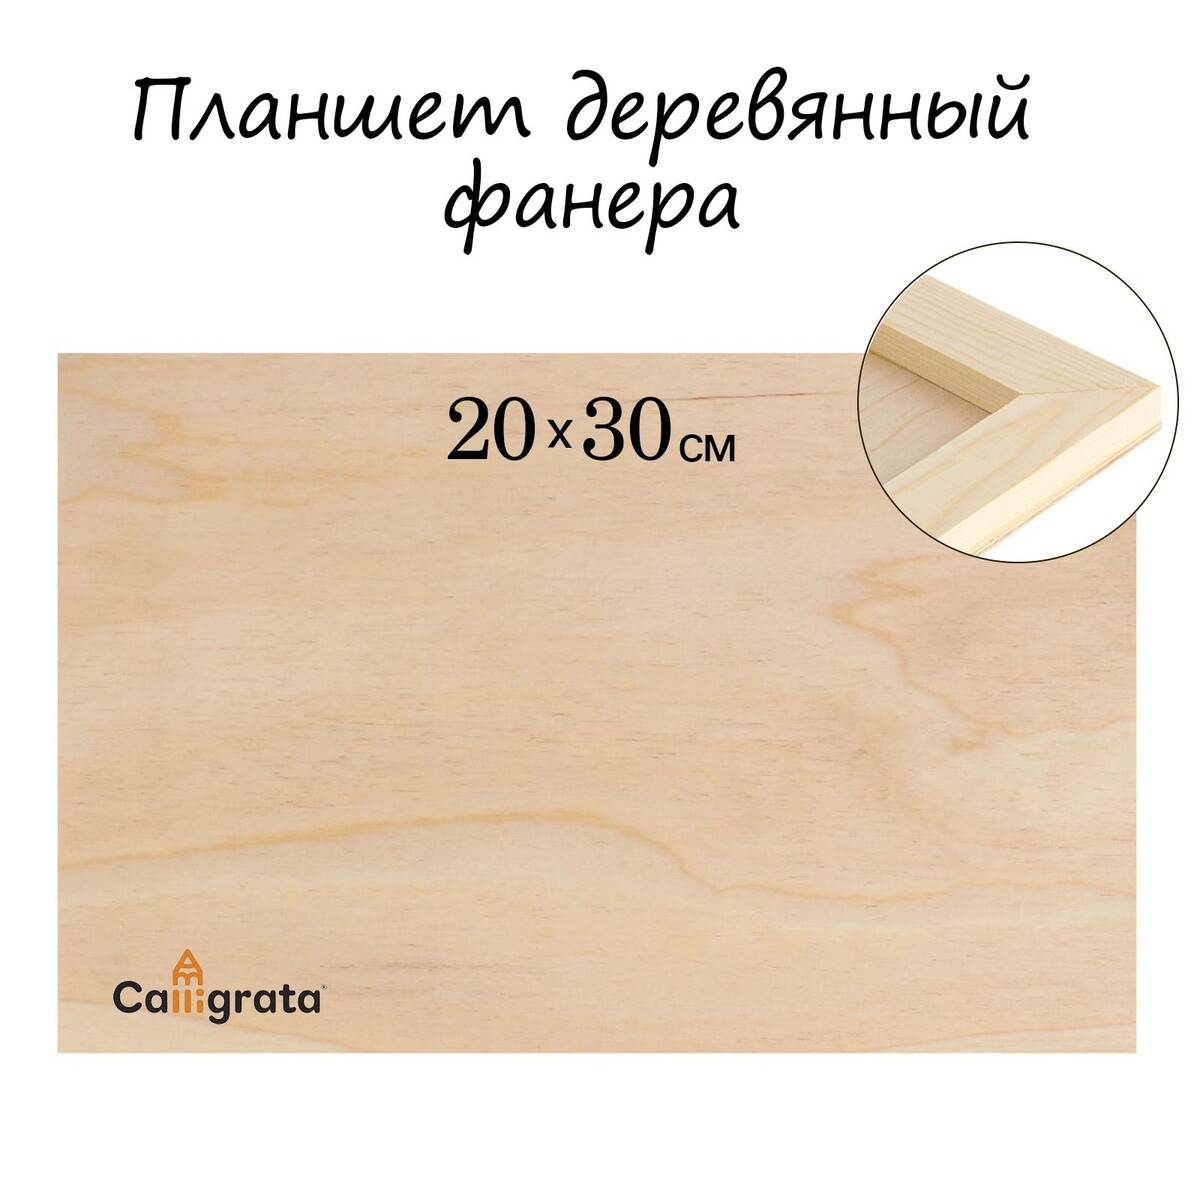 Планшет деревянный 20 х 30 х 2 см, фанера планшет деревянный с врезанной фанерой 40 х 40 х 3 5 см глубина 0 5 см сосна